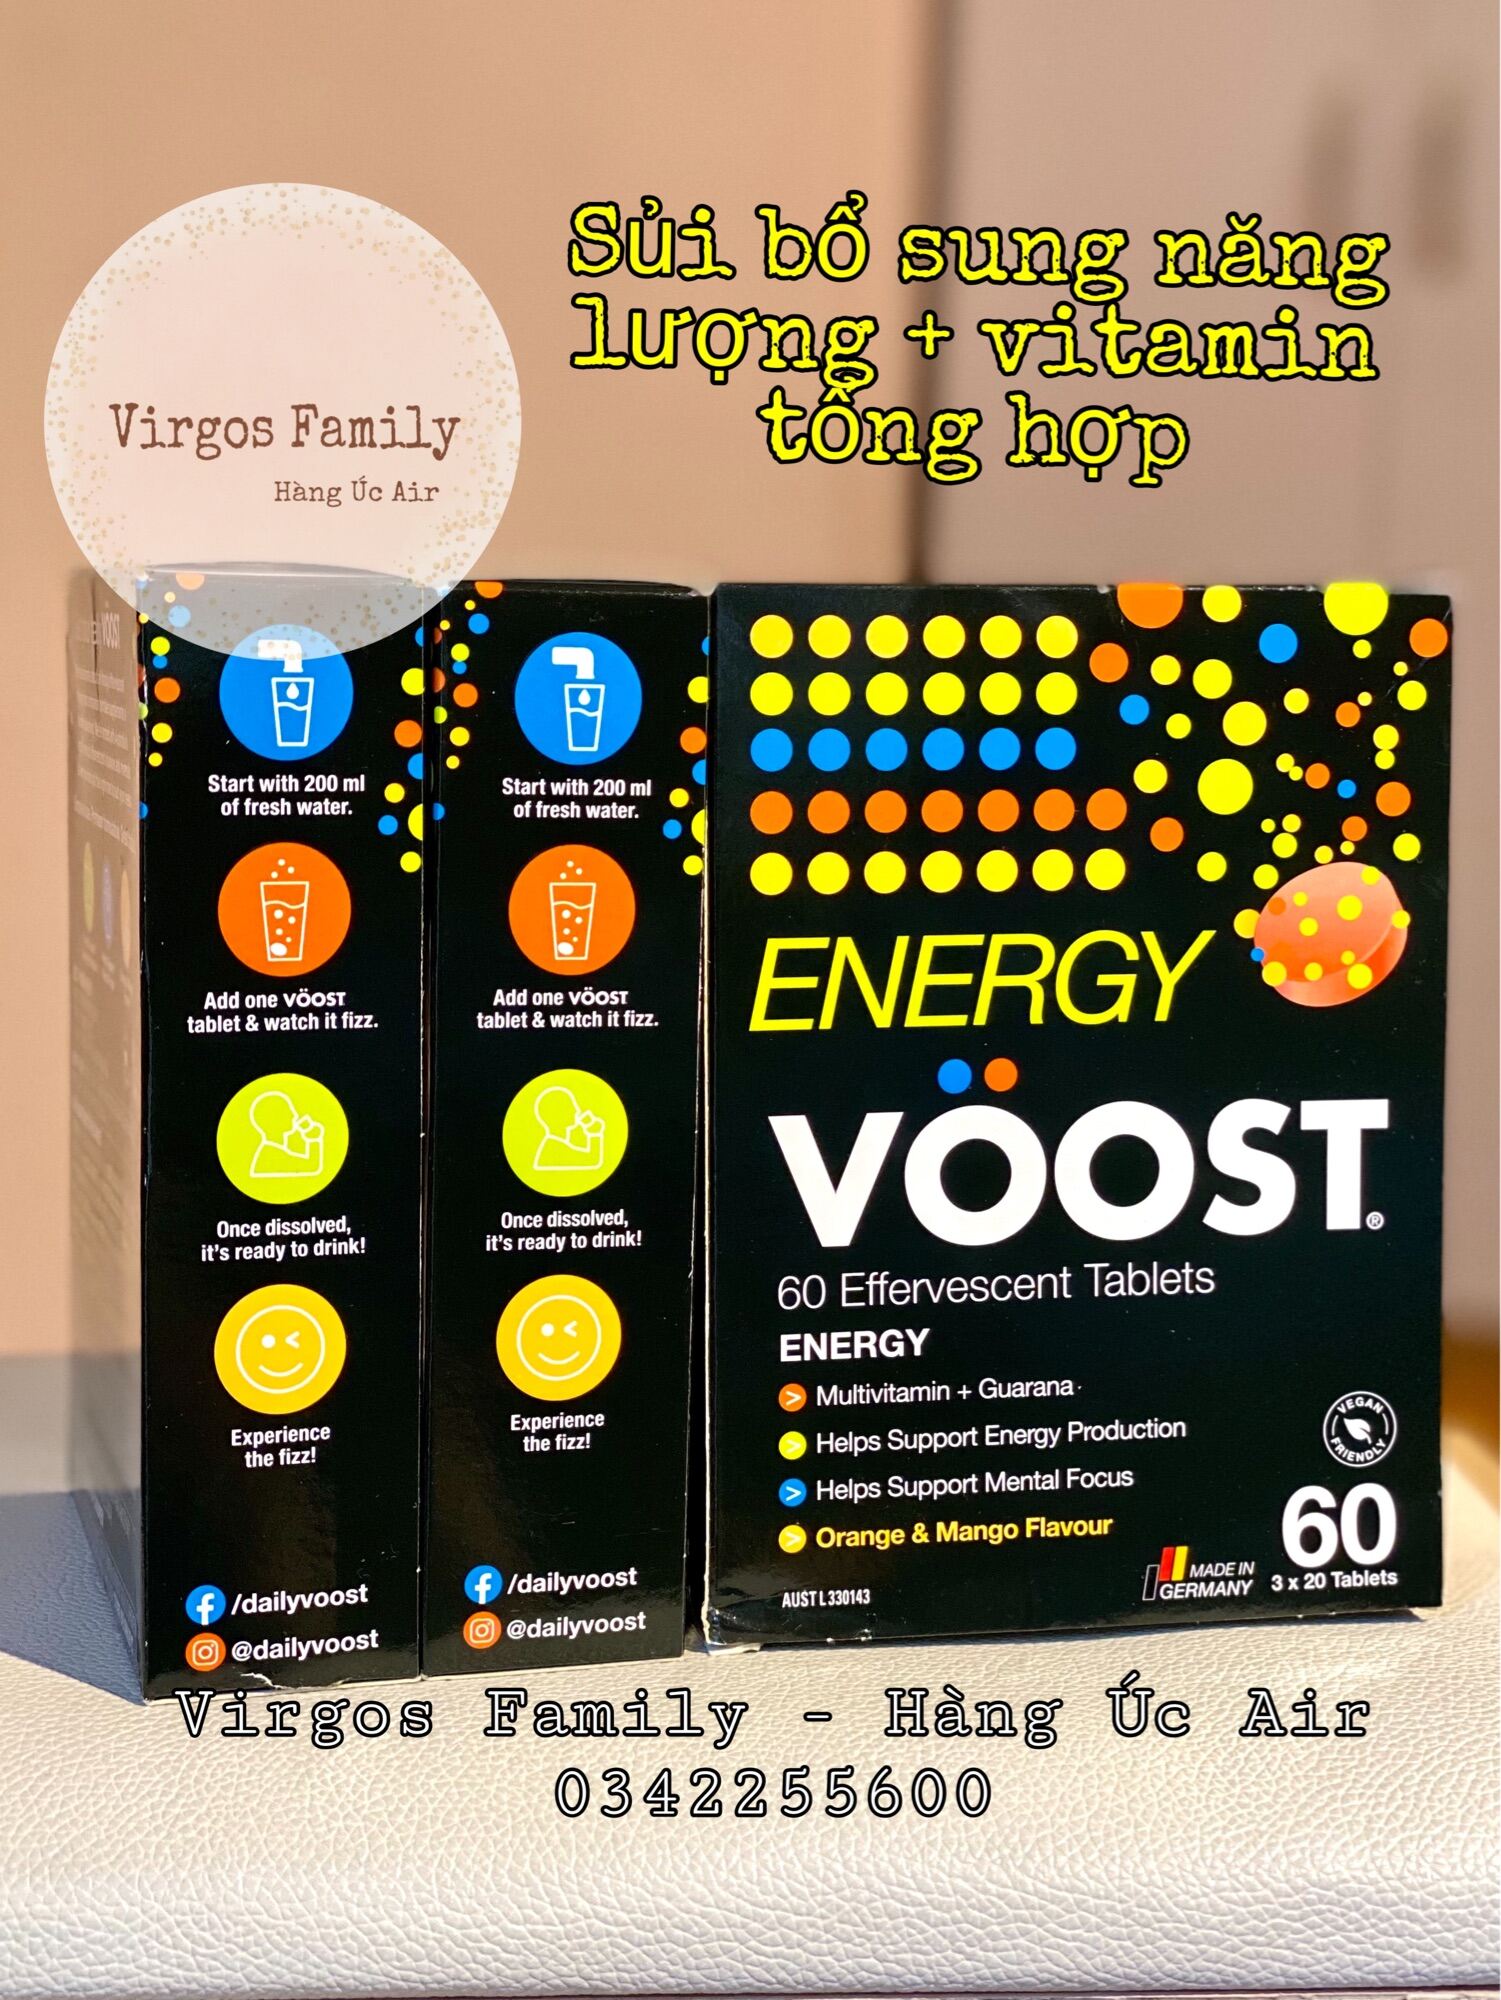 Sủi bổ sung năng lượng & vitamin tổng hợp Voost Energy 3x20 viên thumbnail